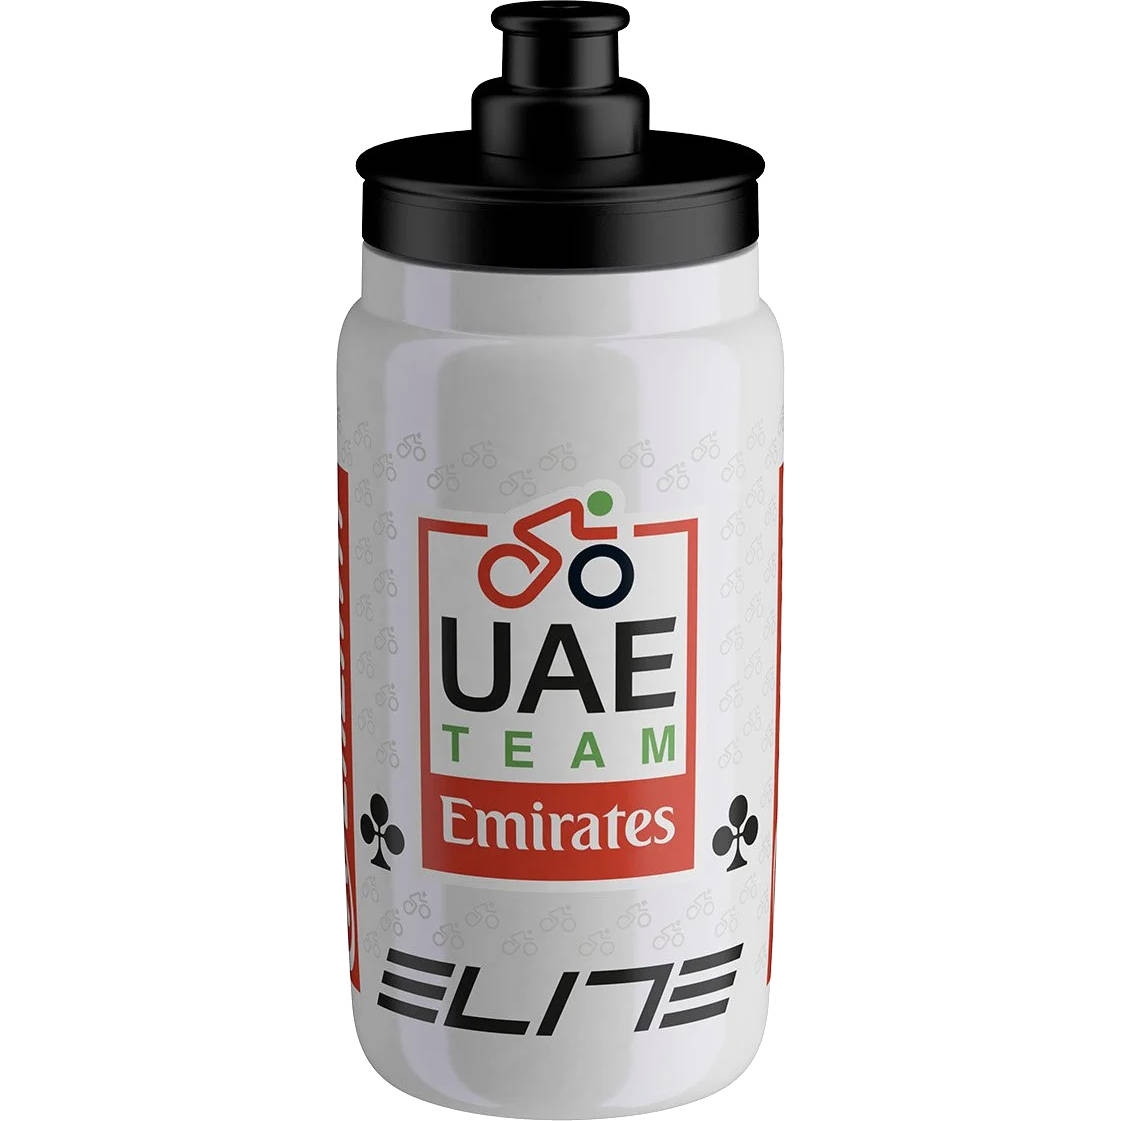 Produktbild von Elite Fly Teams Trinkflasche 2024 - 550ml - Uae Team Emirates